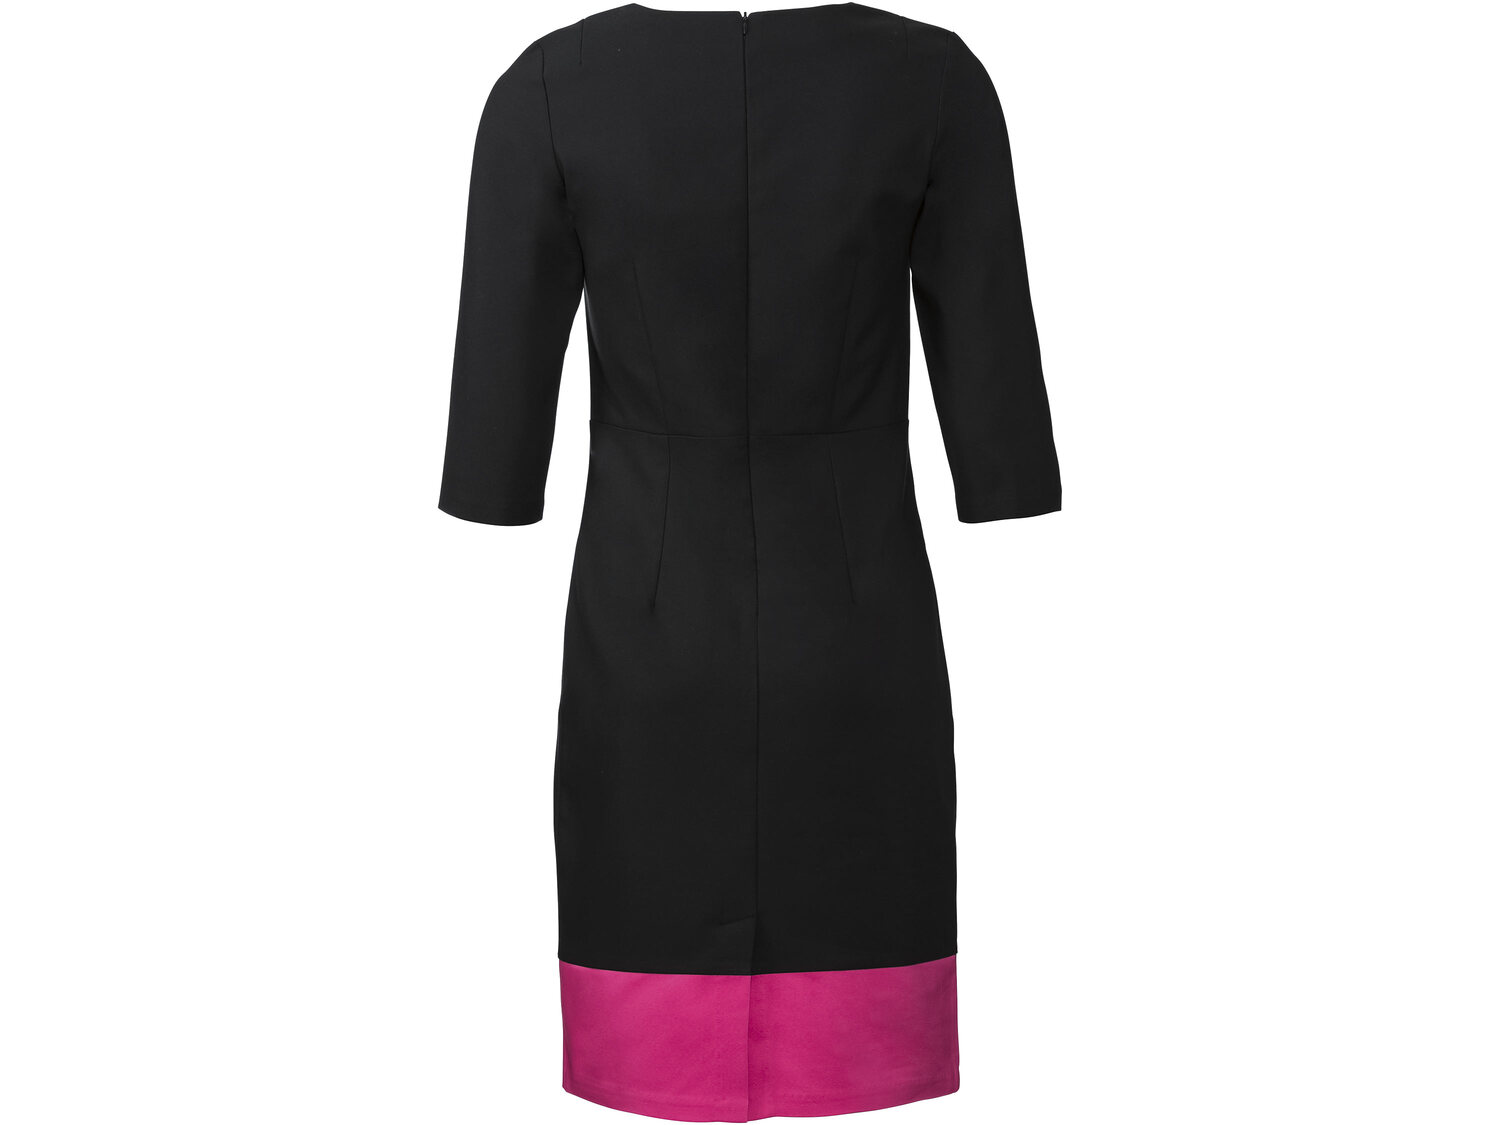 Sukienka z bawełną Esmara, cena 39,99 PLN 
- rozmiary: 36-42
Dostępne rozmiary

Opis

- ...